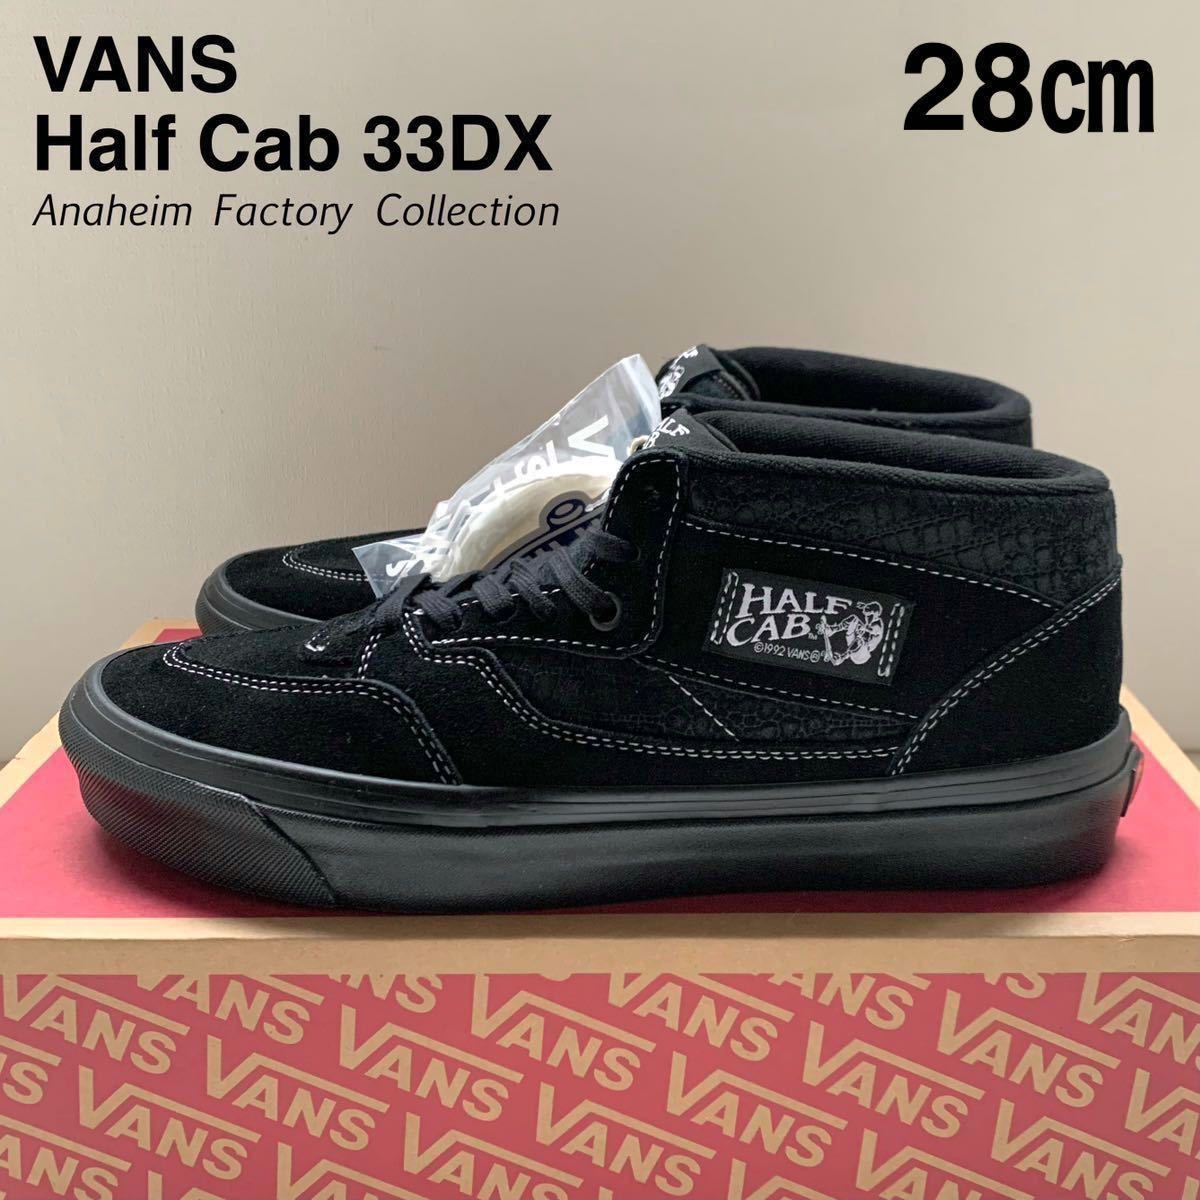 新品 VANS バンズ アナハイム ファクトリー ハーフキャブ Half Cab 33DX スエード スニーカー 28㎝ 黒 ブラックUS企画 キャバレロ 送料無料